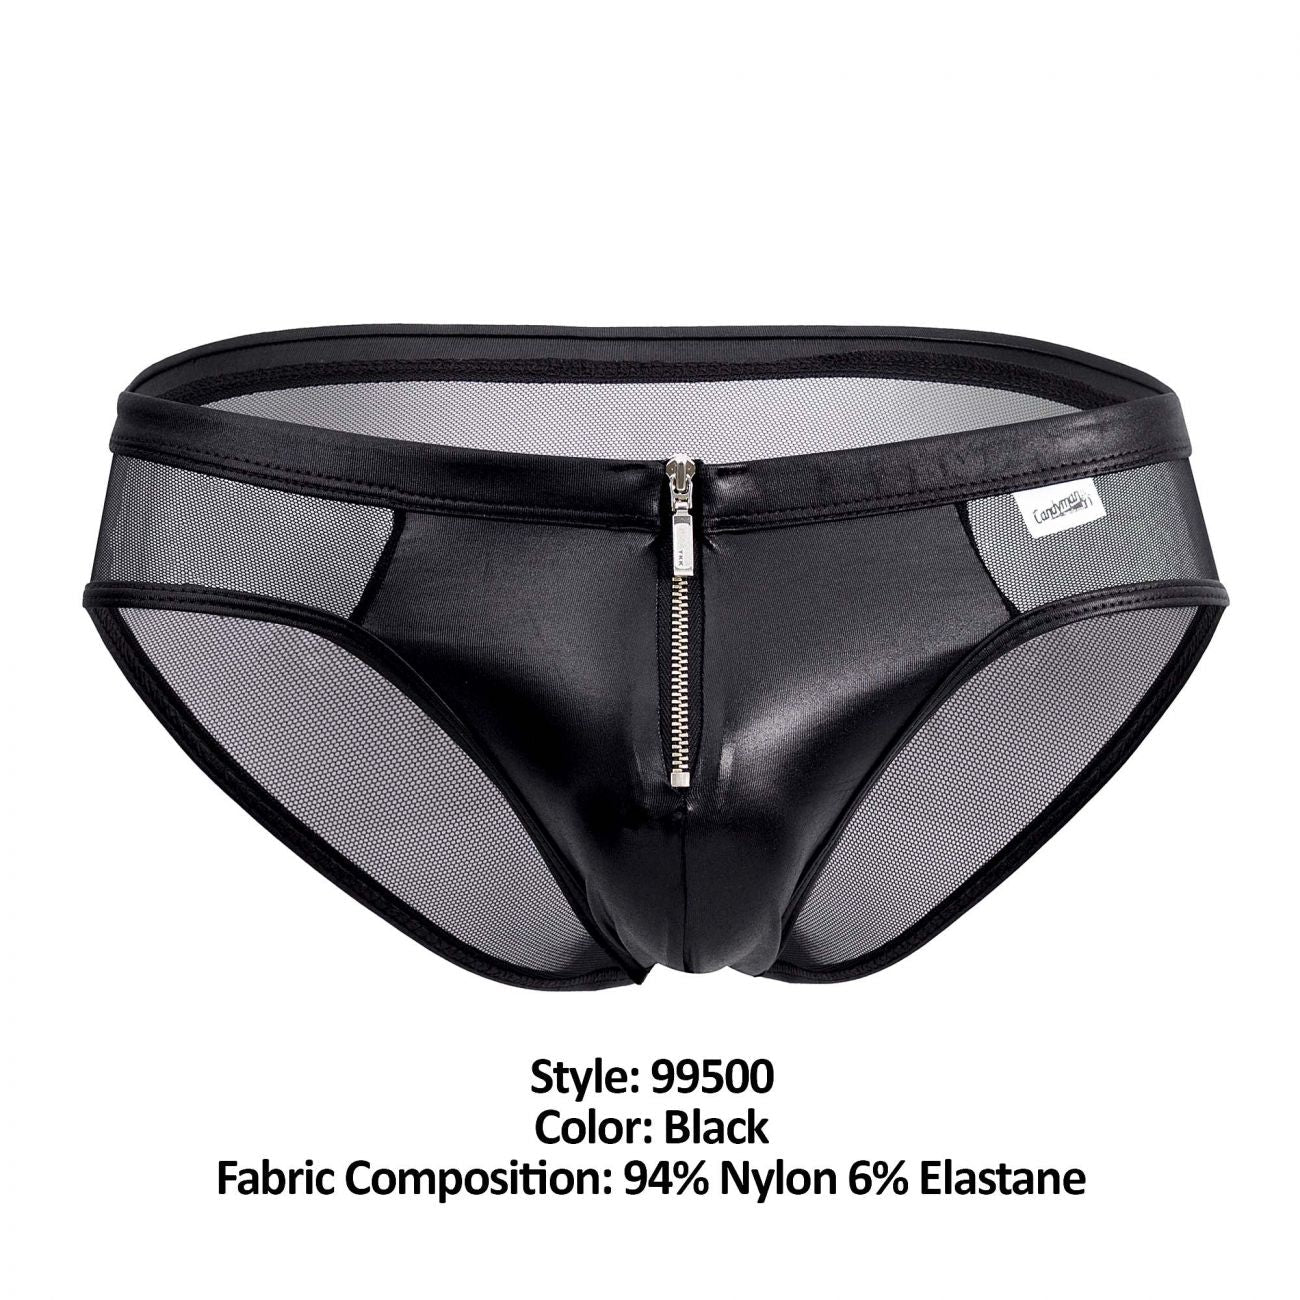 JCSTK - CandyMan 99500 Zipper-Mesh Bikini Black